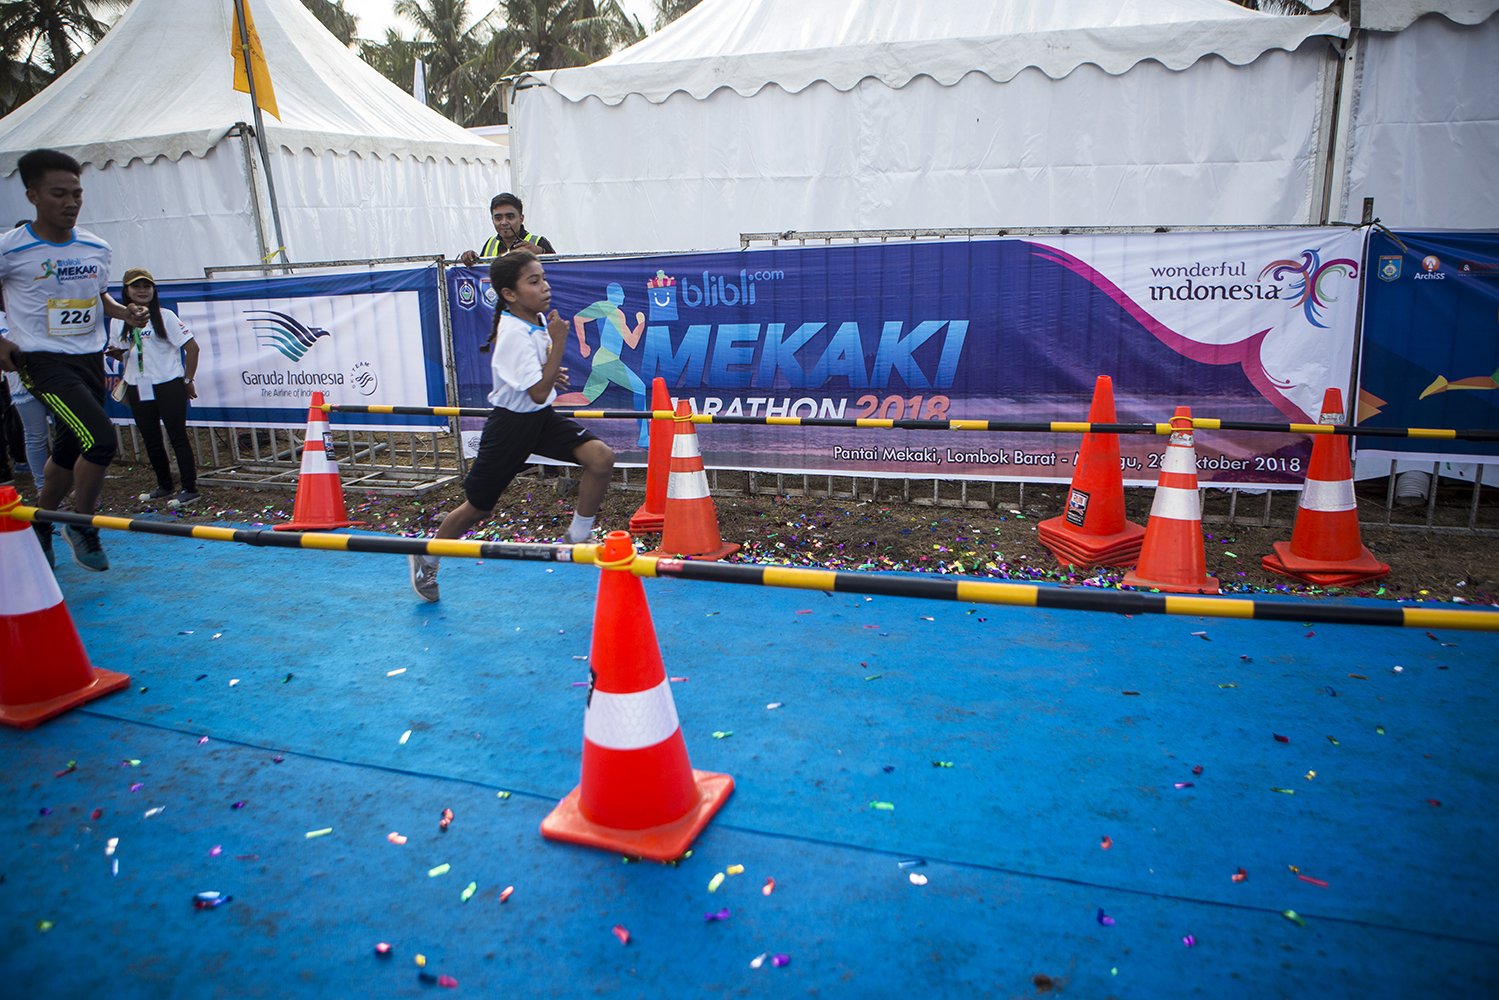 1.500 kontestan turut serta, mulai dari Bengkulu hingga Papua dan sebagian besar di antaranya adalah pelari pemula.